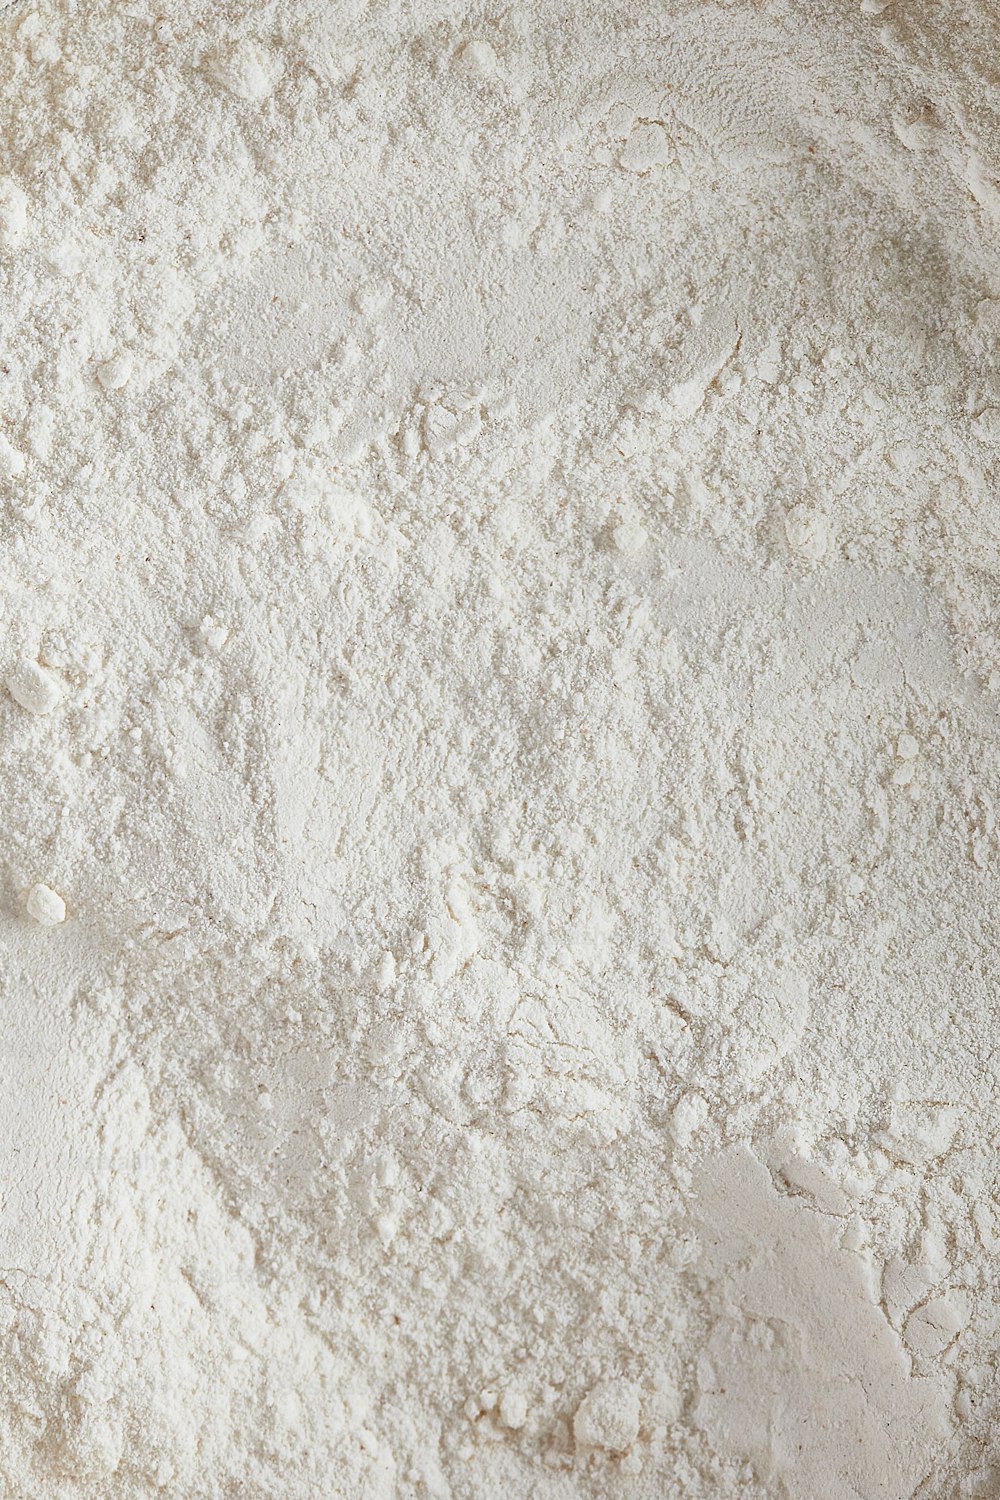 a close up of a bowl of flour